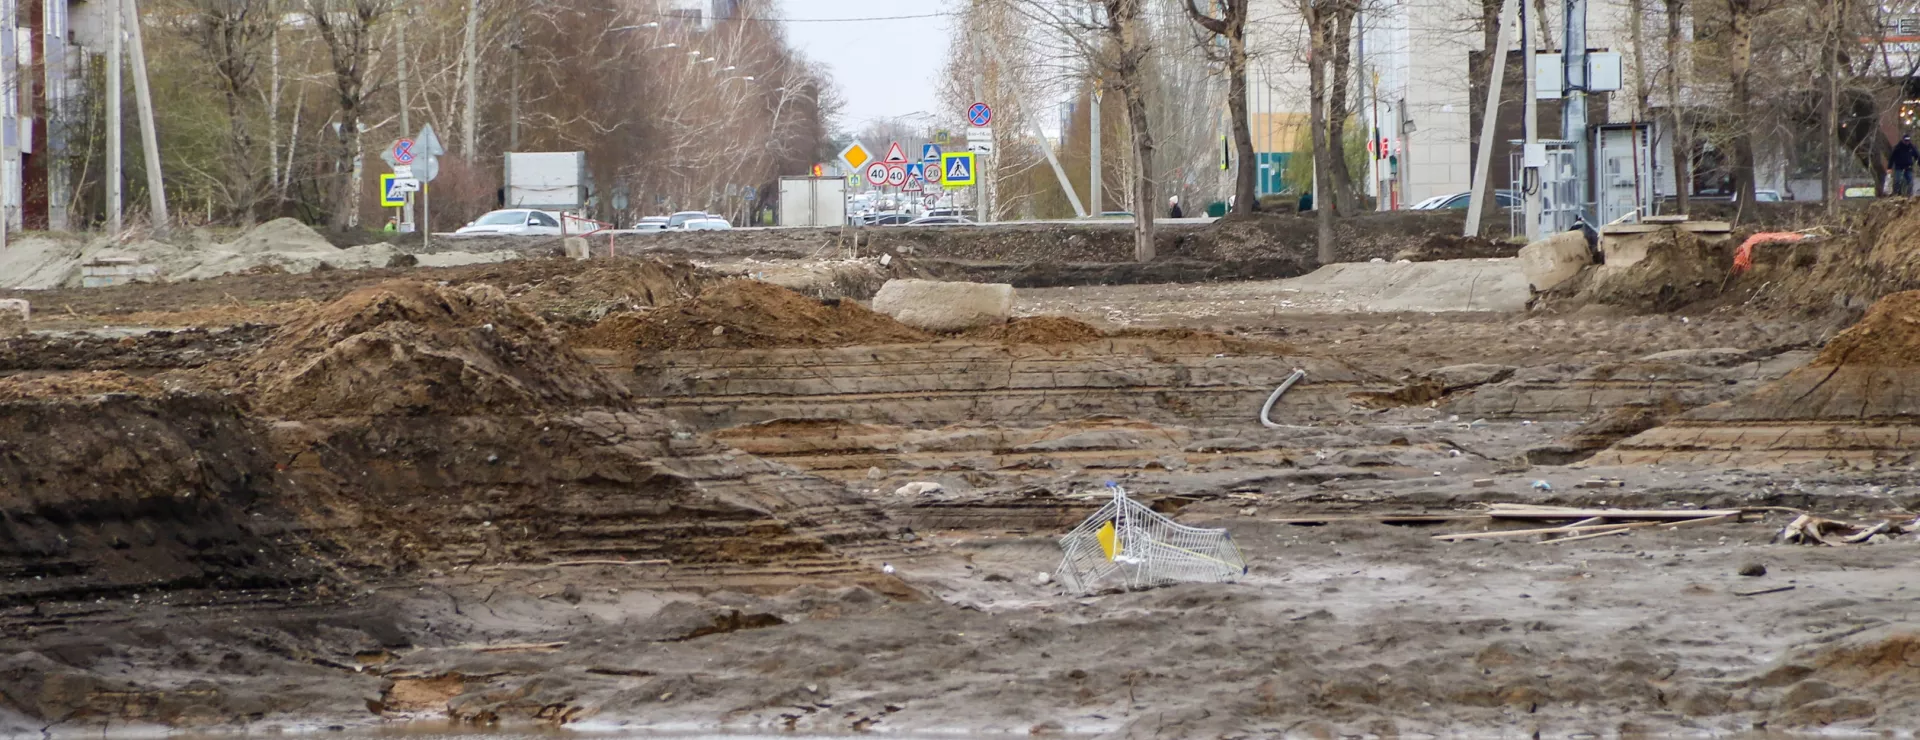 740 метров и четыре полосы: как в спальном районе Барнаула строят новую дорогу. Фото